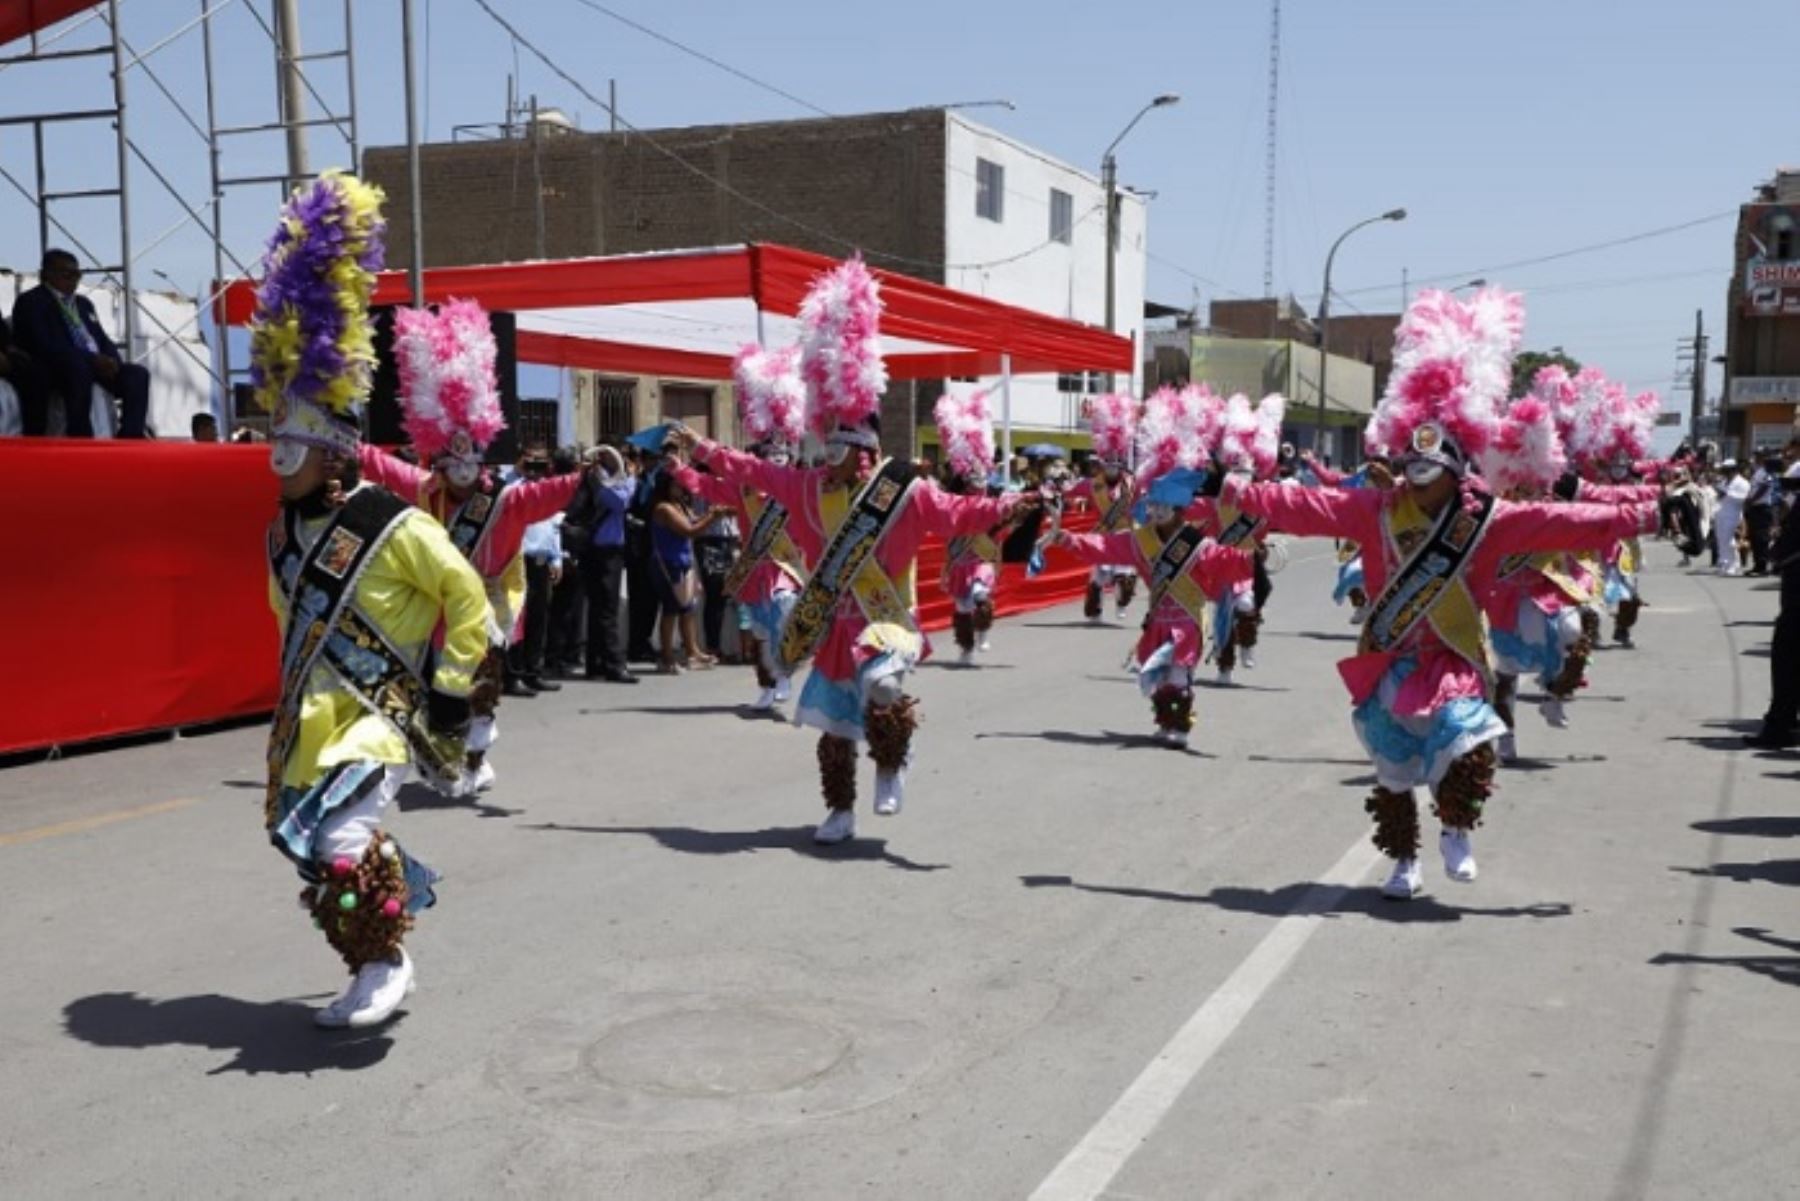 Con actividades culturales y protocolares, las autoridades y la población del distrito de Supe, en la provincia de Barranca, región Lima, conmemoraron 200 años del Grito de Independencia, hecho histórico que constituyó la primera proclamación de la independencia de un pueblo en el Perú.